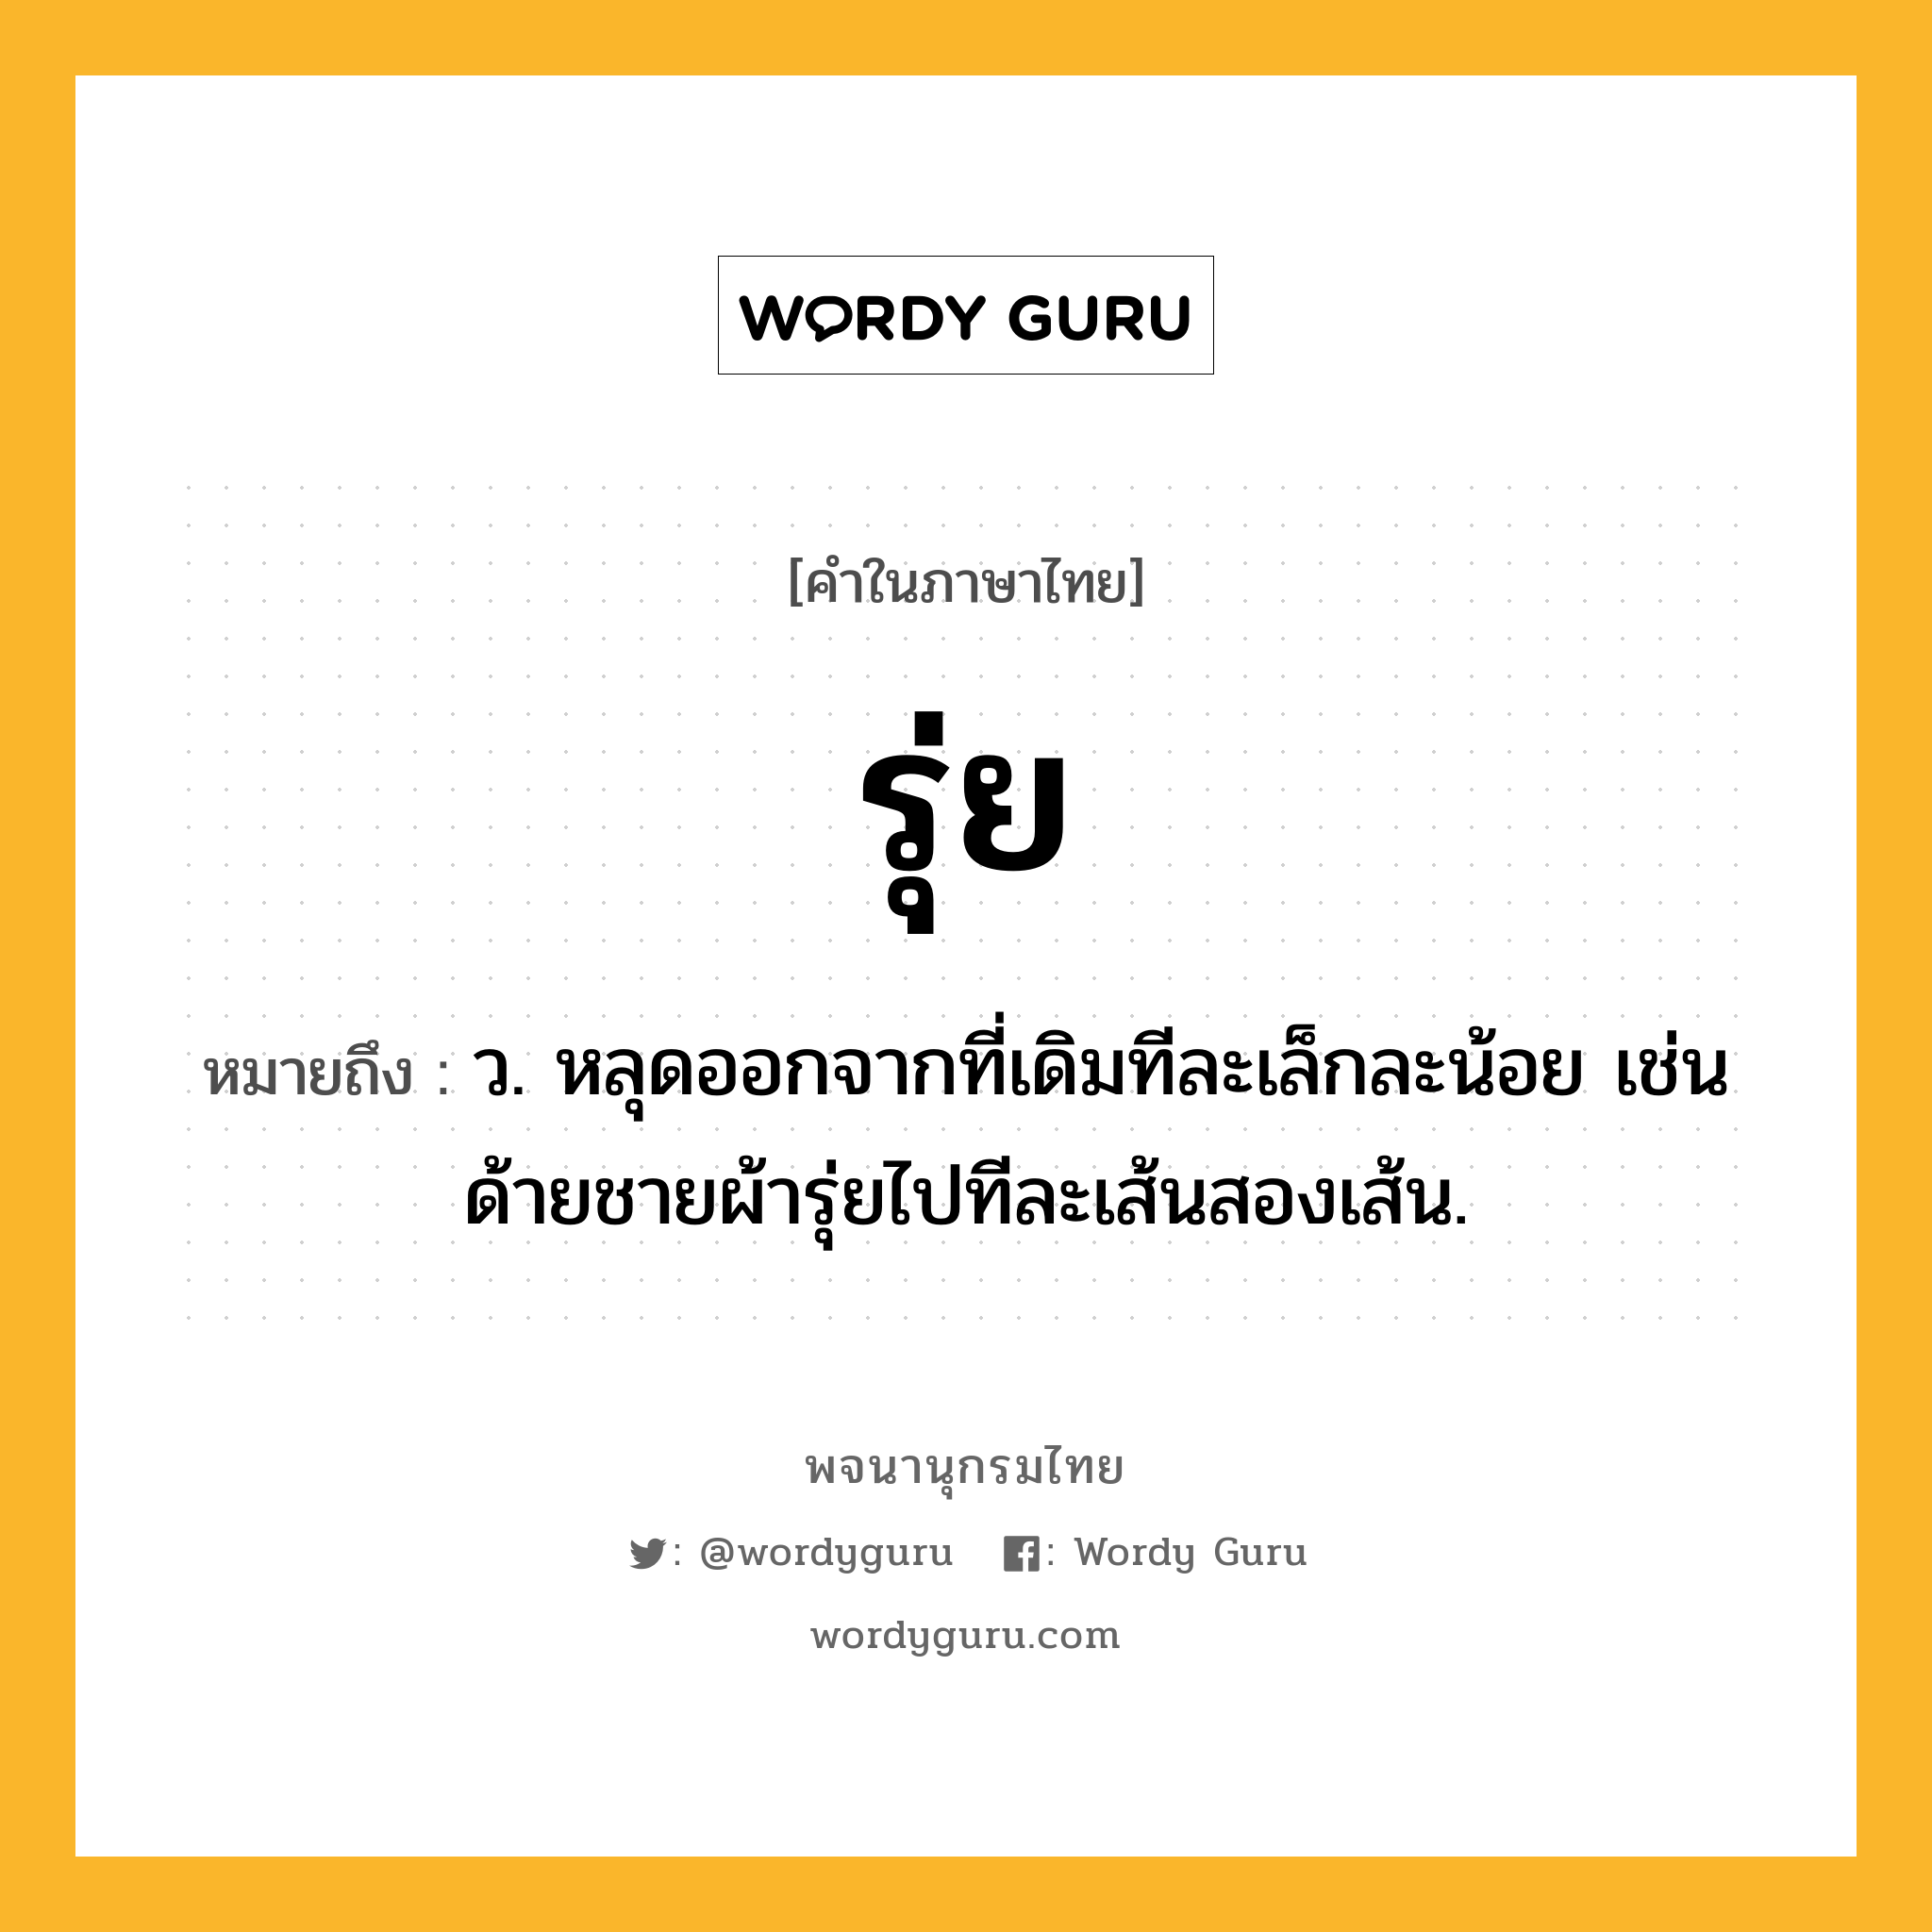 รุ่ย ความหมาย หมายถึงอะไร?, คำในภาษาไทย รุ่ย หมายถึง ว. หลุดออกจากที่เดิมทีละเล็กละน้อย เช่น ด้ายชายผ้ารุ่ยไปทีละเส้นสองเส้น.